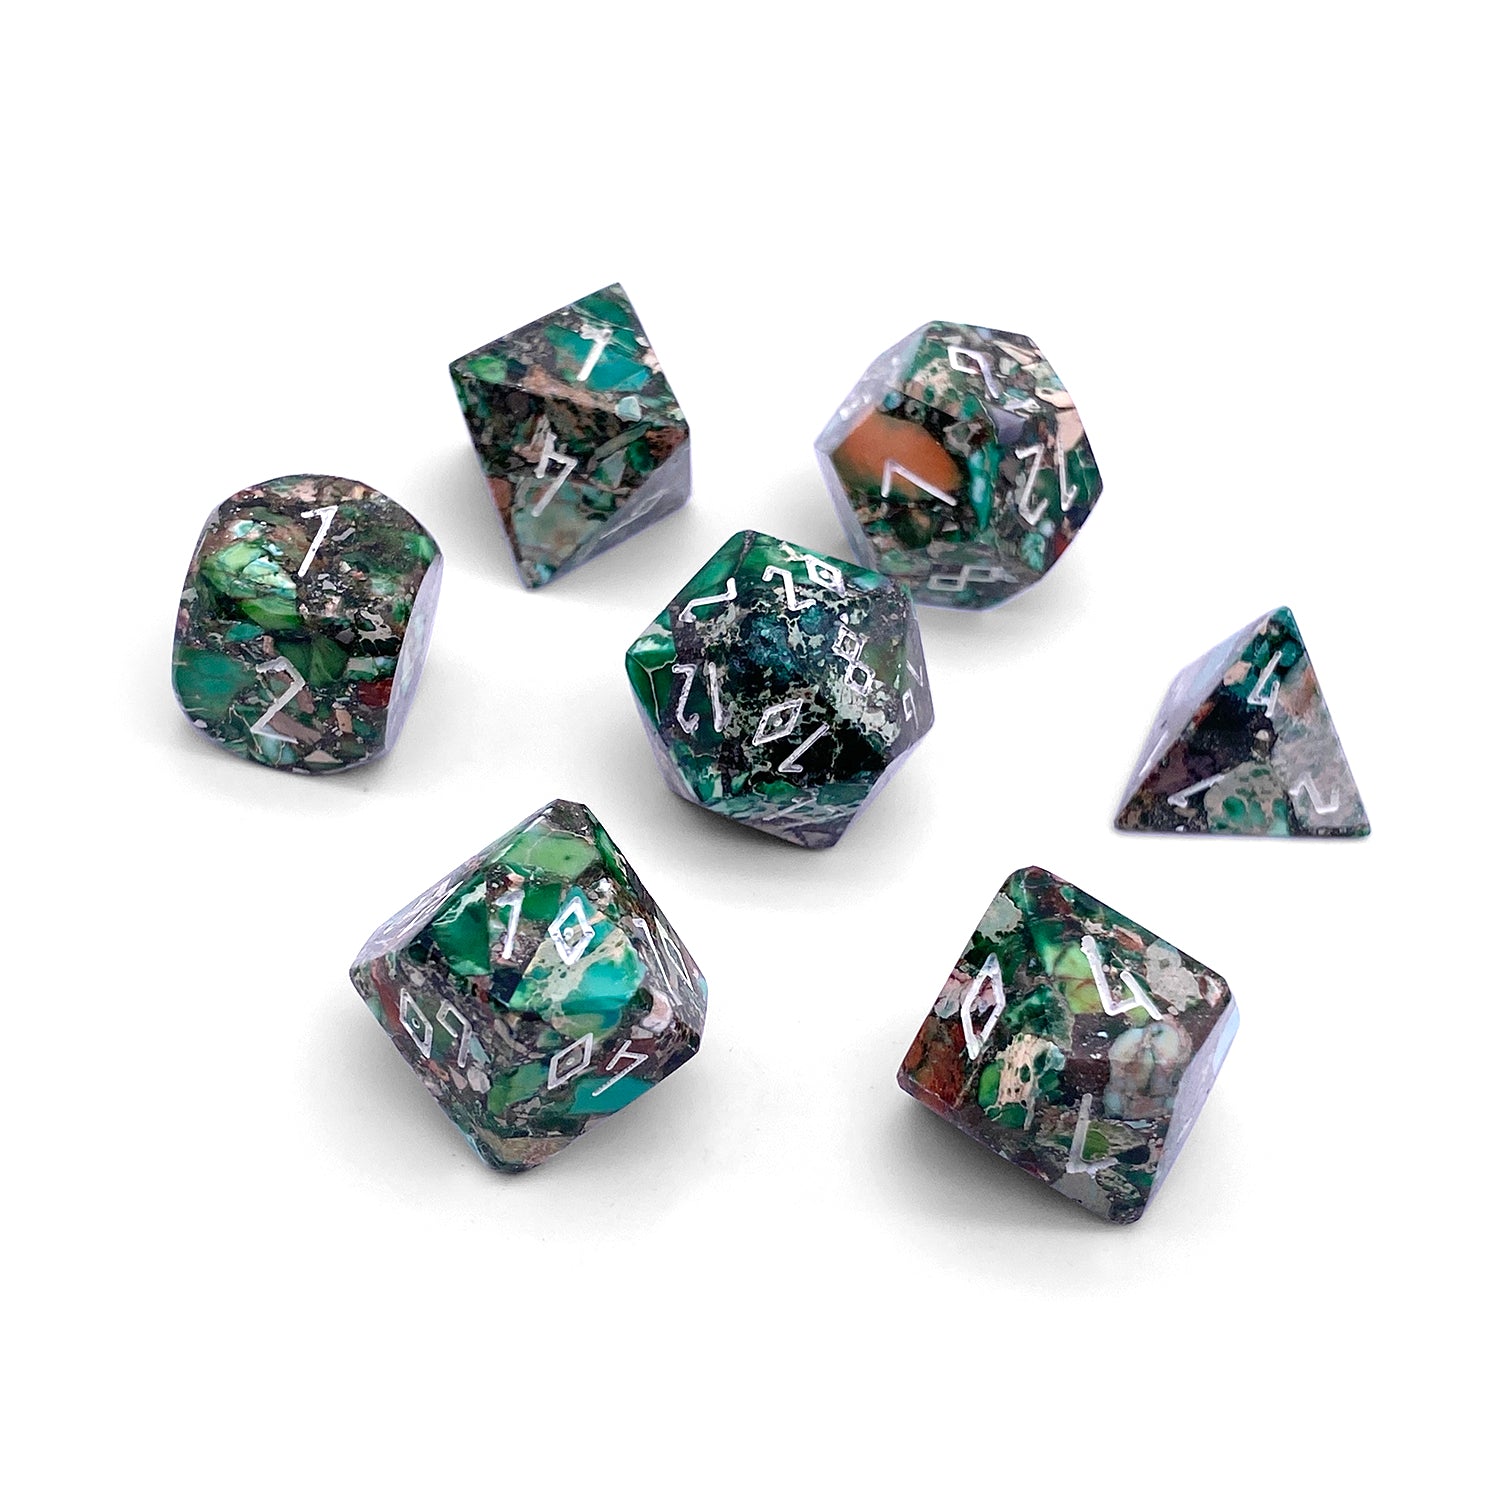 Pyrite Green Imperial Jasper - 7 Piece RPG Set TruStone Dice